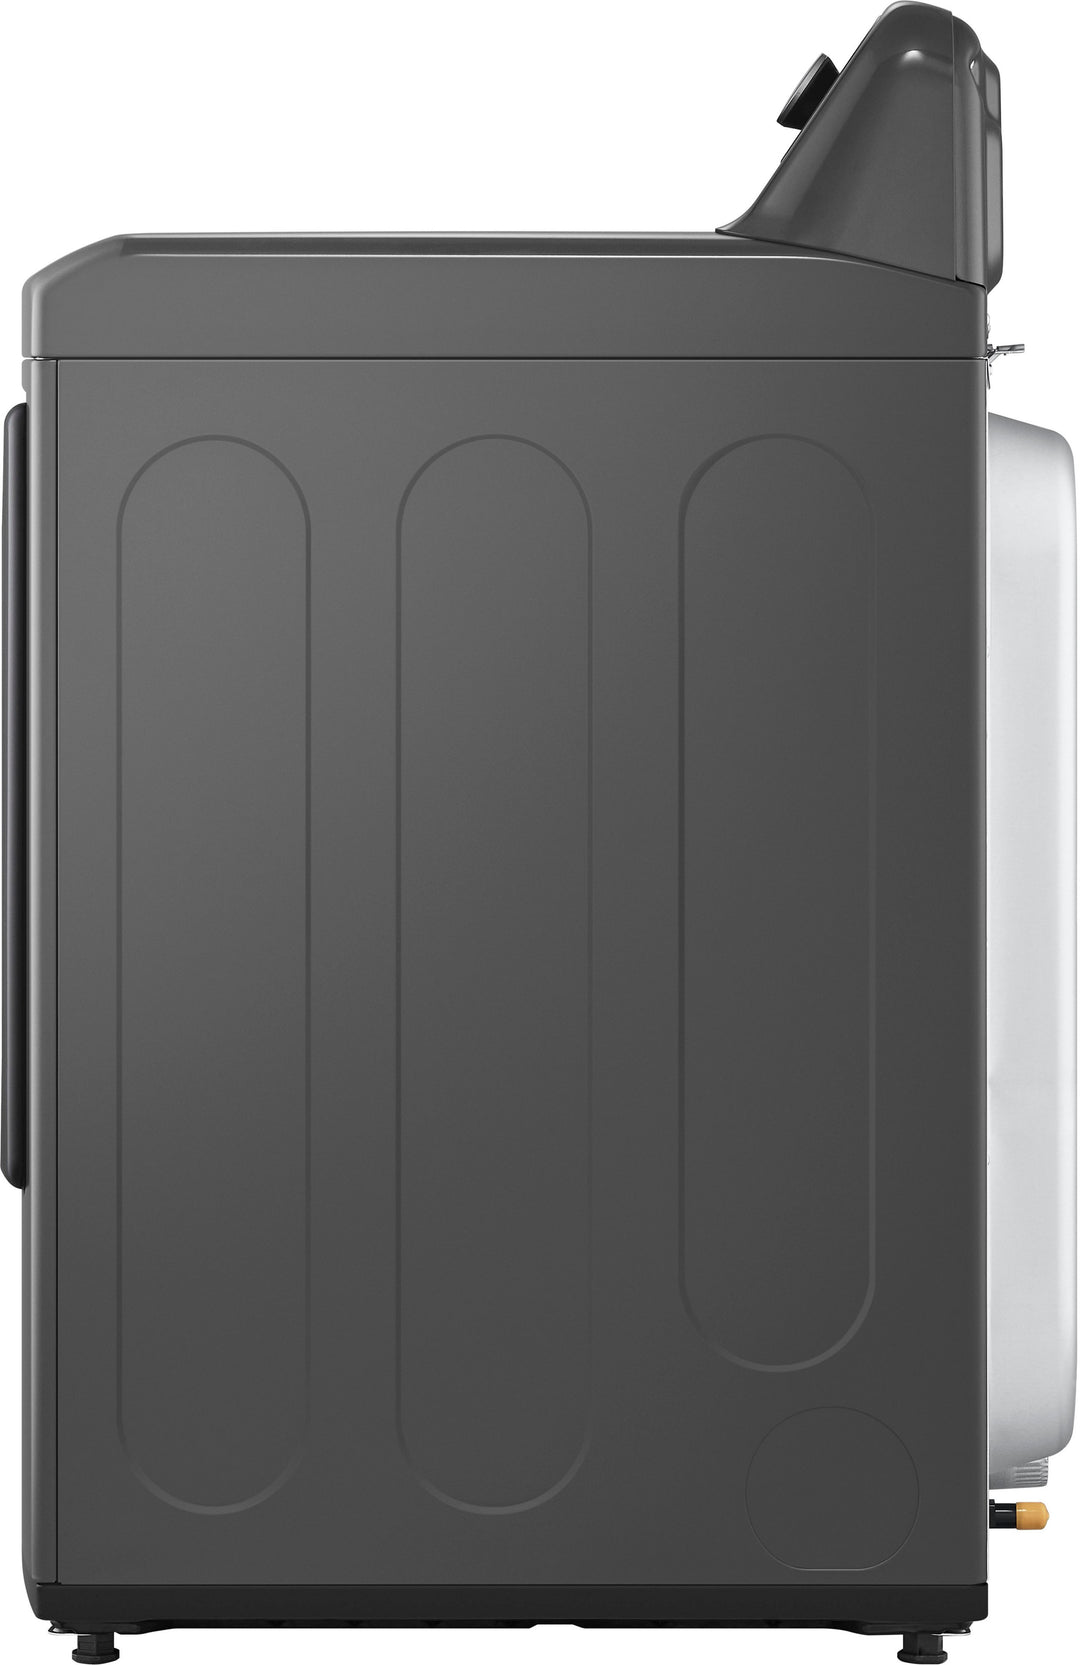 LG - 7.3 Cu. Ft. Gas Dryer with Sensor Dry - Monochrome Grey_4